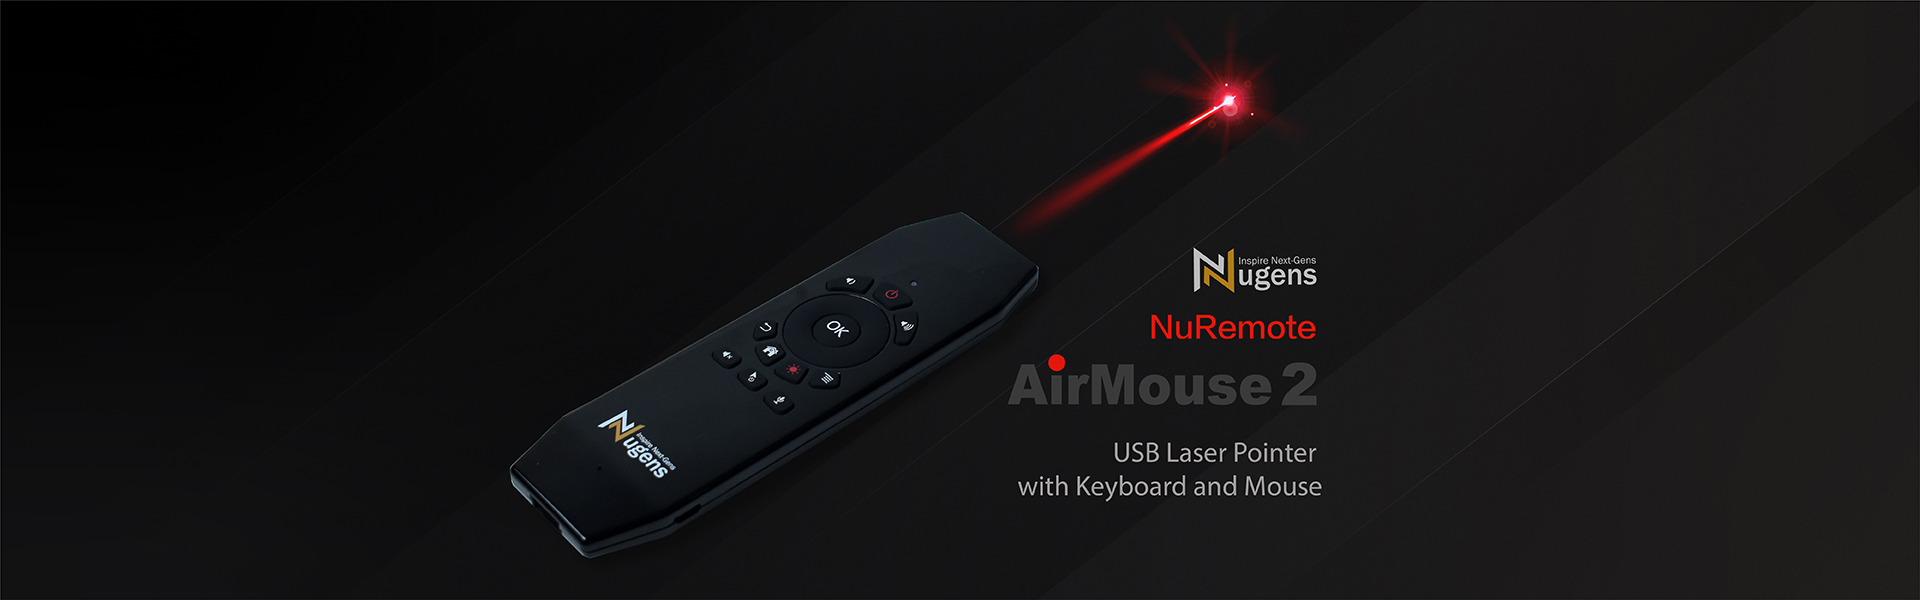 Nugens NuRemote AirMouse2 Wireless